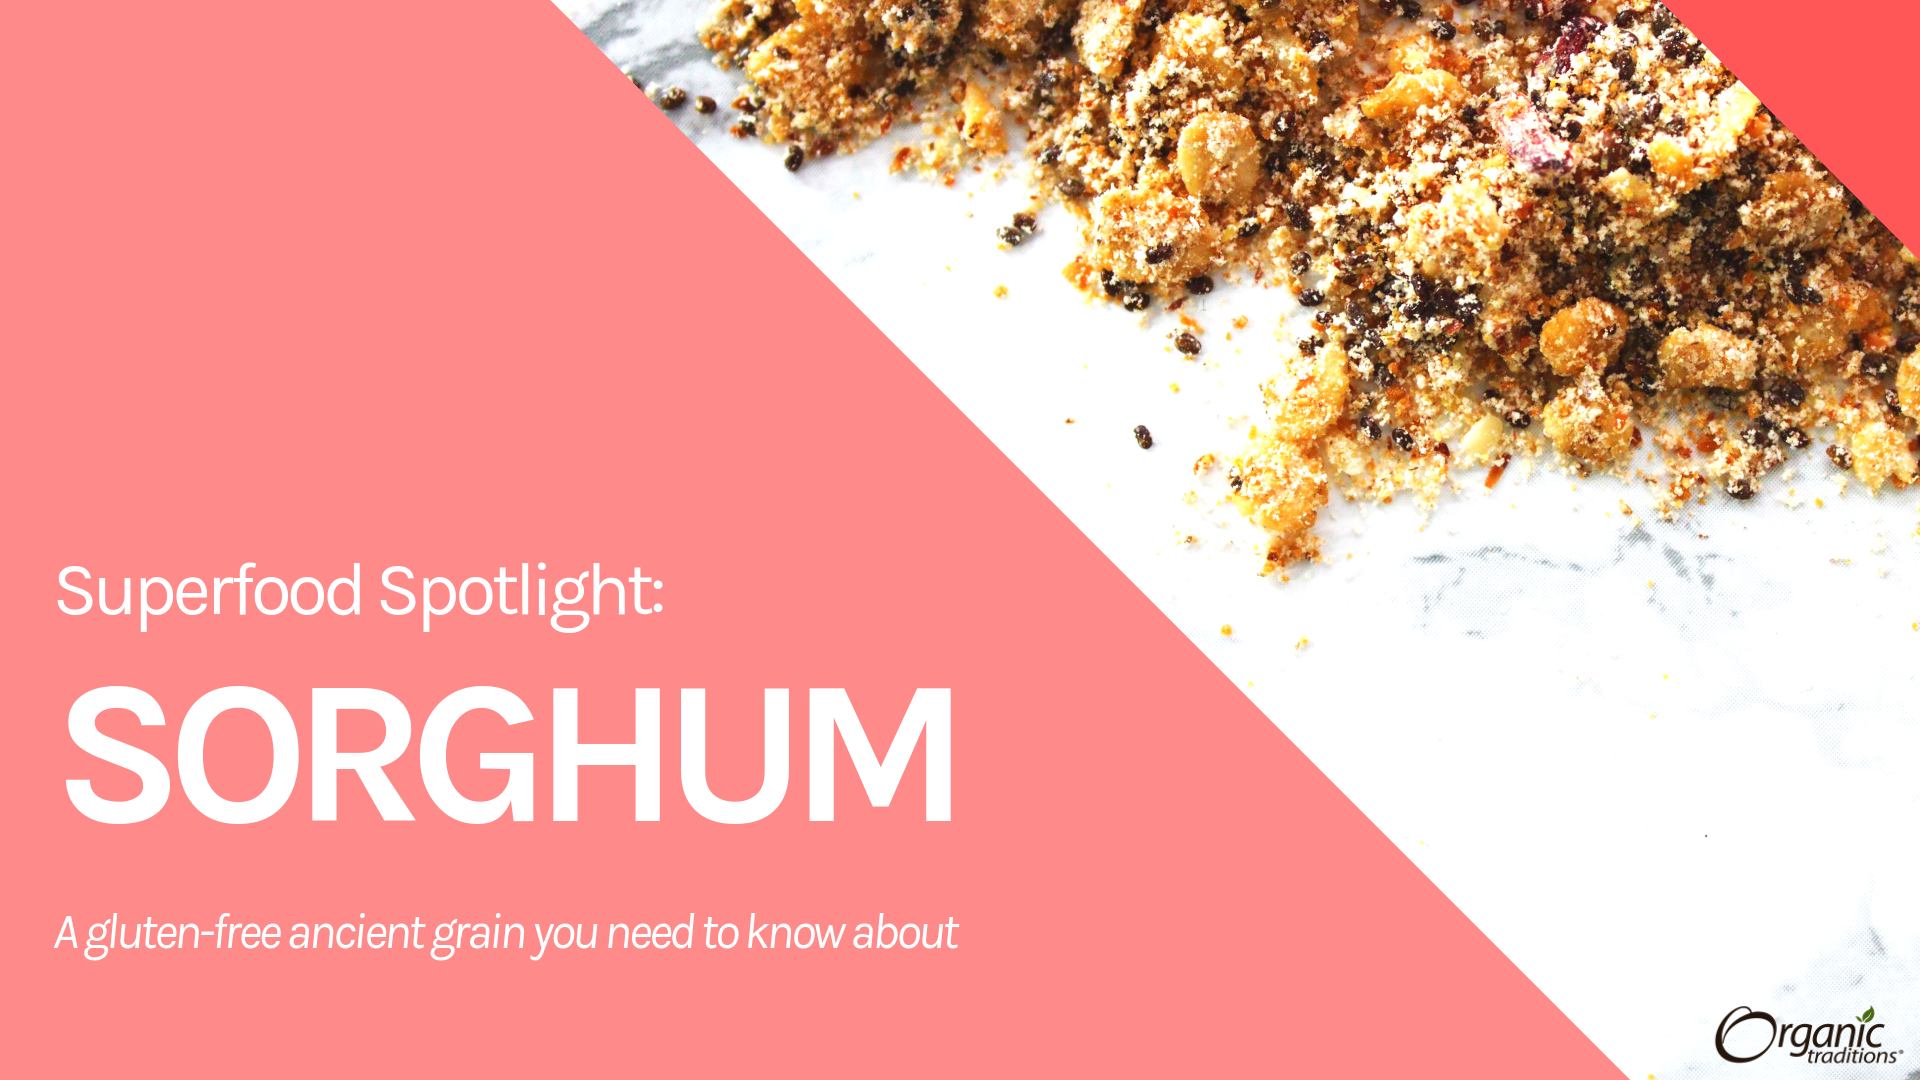 Superfood Spotlight: Sorghum